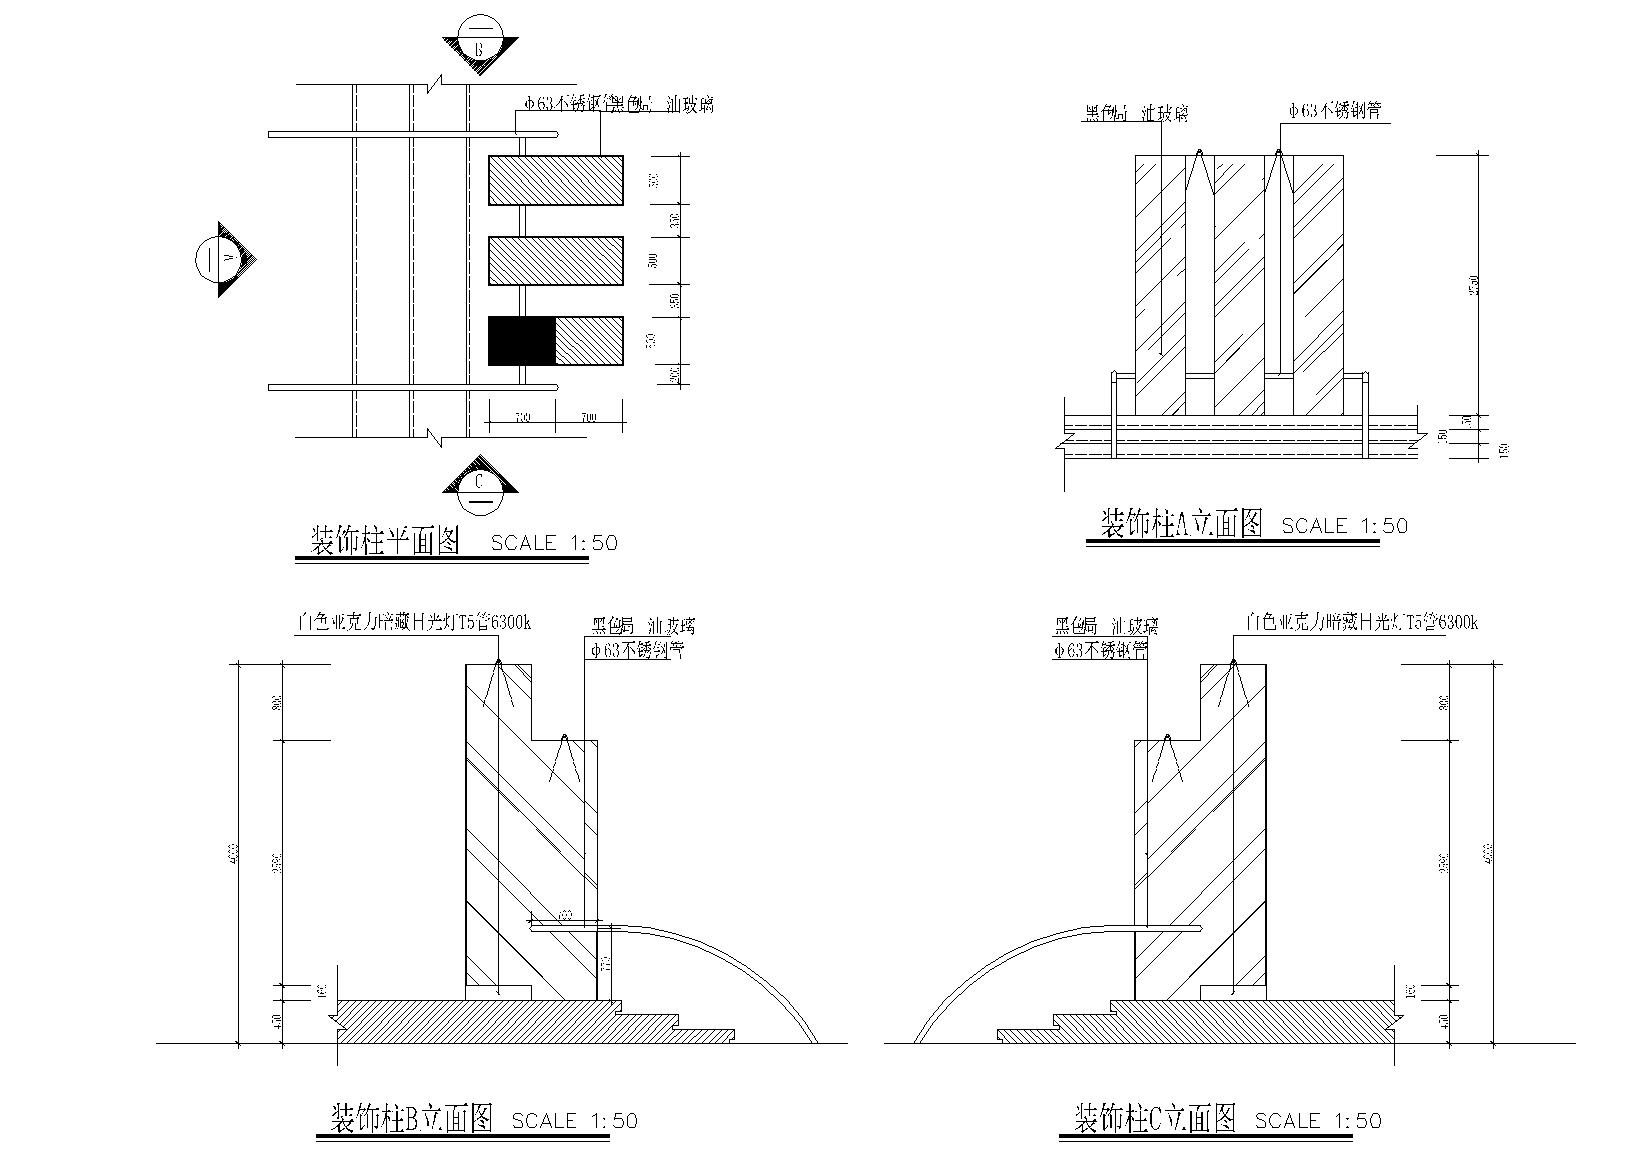 KITO某概念展厅艺术思想馆施工图+建筑外观-装饰区立面图10